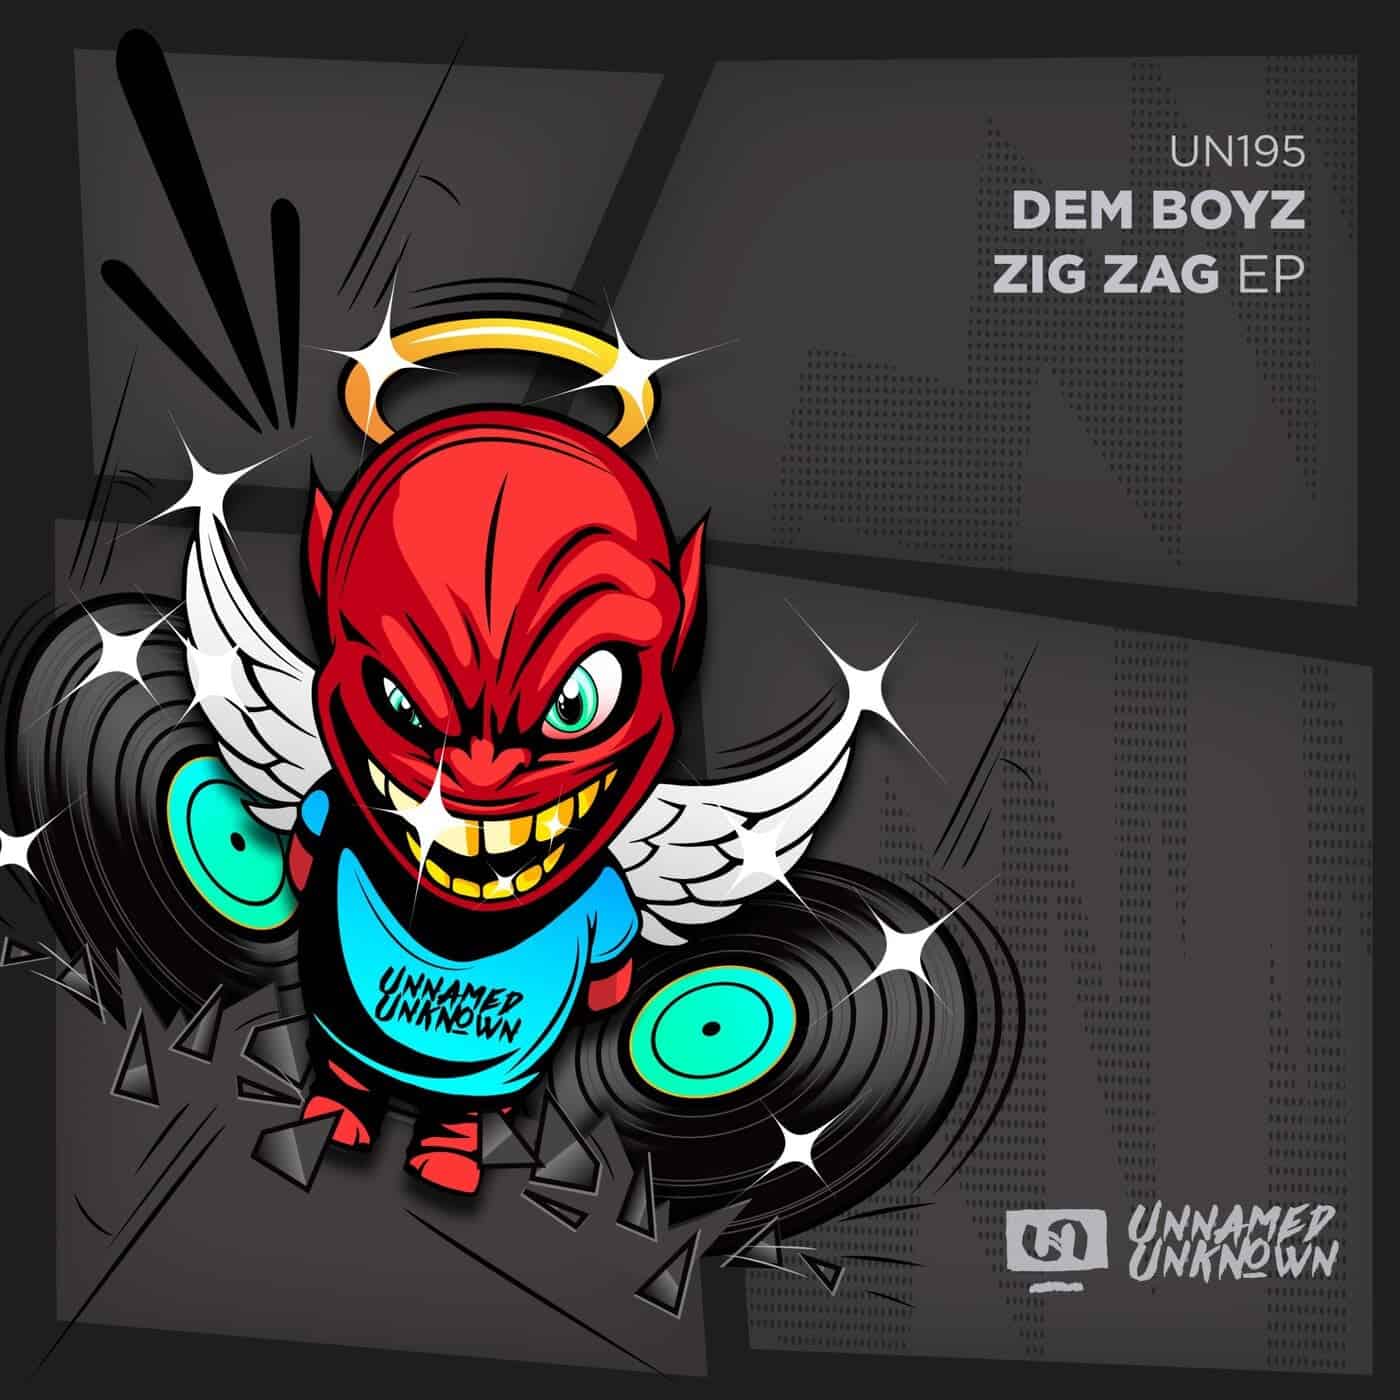 Download Dem Boyz - Zig Zag on Electrobuzz